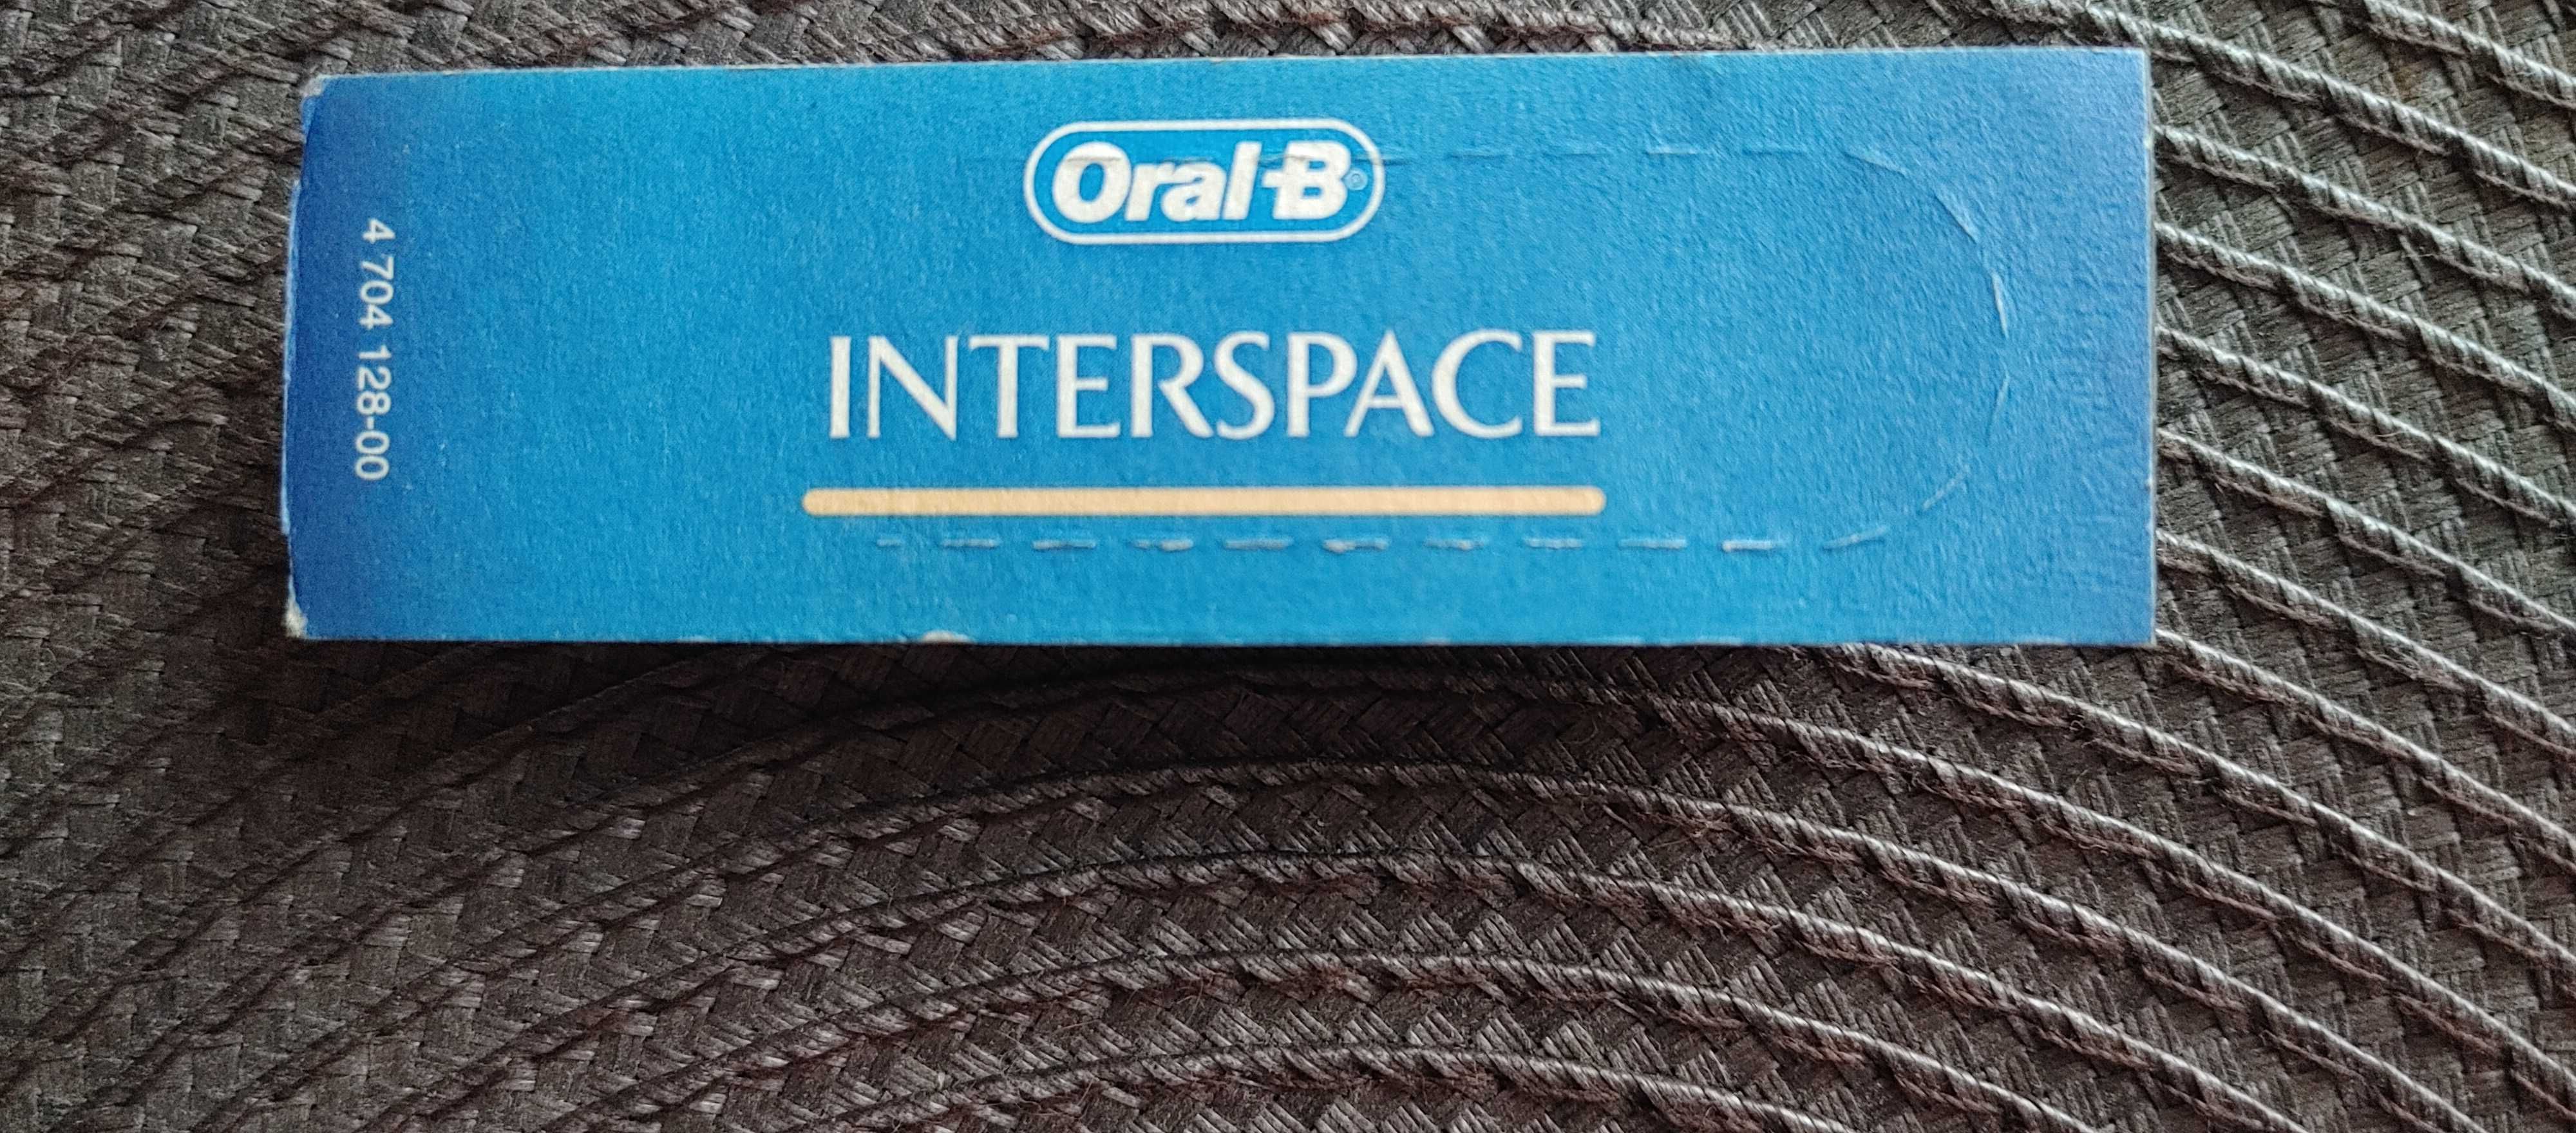 Oral-B końcówka Interspace, nowa